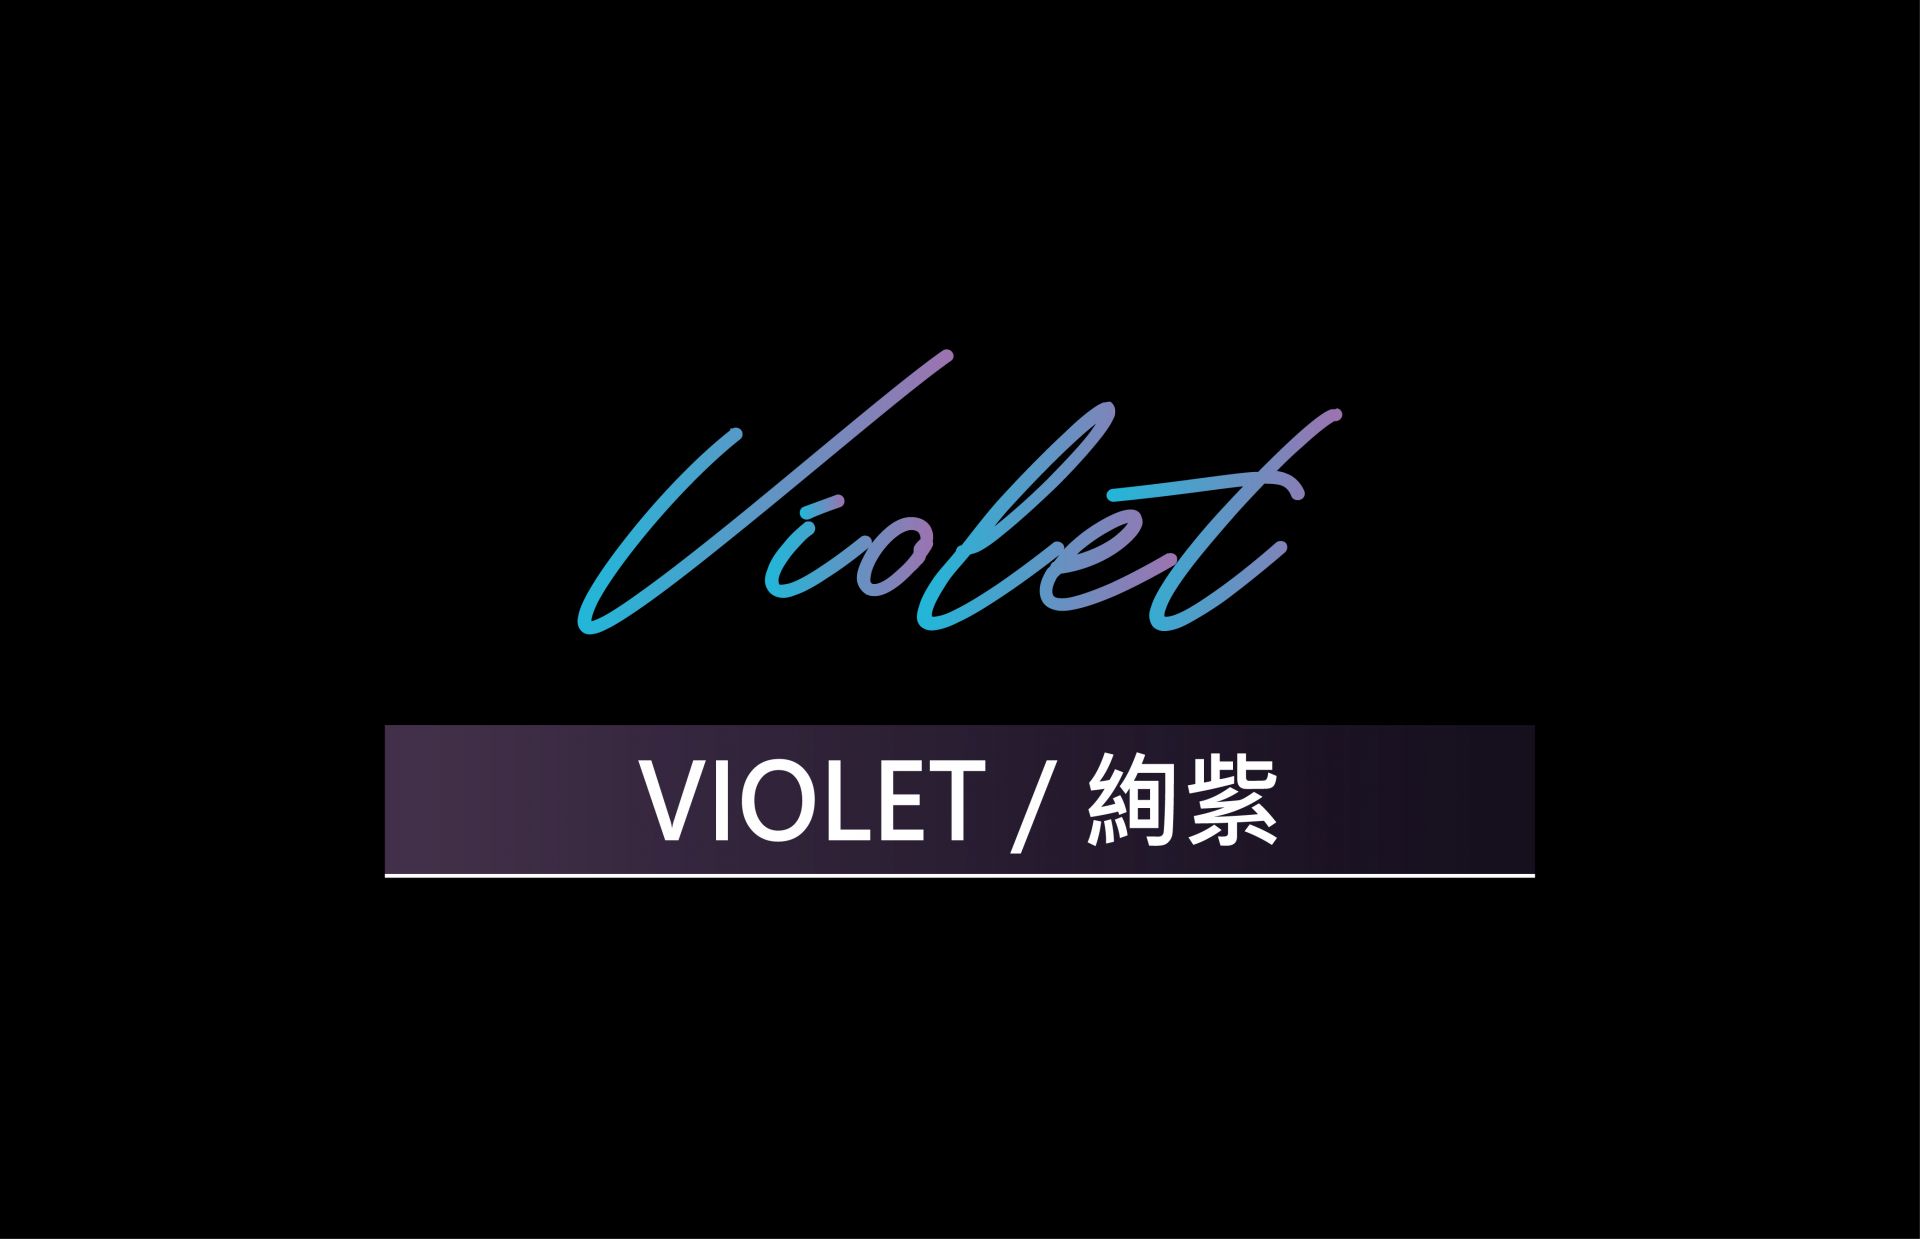 VIOLET / 絢紫